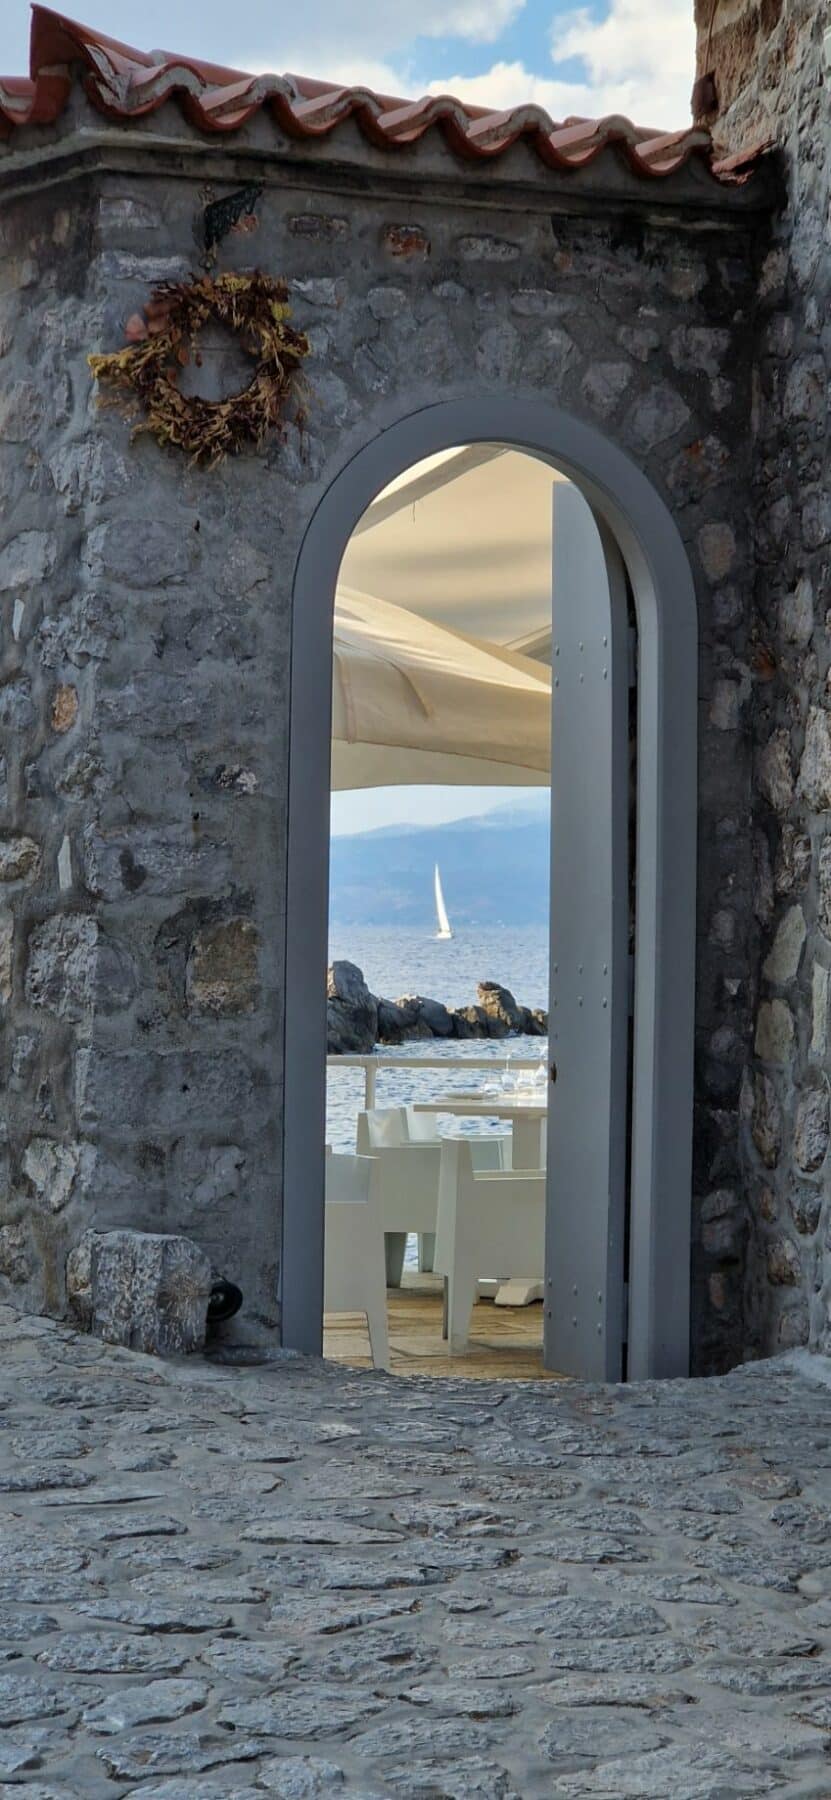 Blick durch einen gewölbten Steineingang, der zu einem Restaurant am Meer führt. In der Ferne ist auf dem Meer unter einem blauen Himmel eine weiße Segelyacht zu sehen.